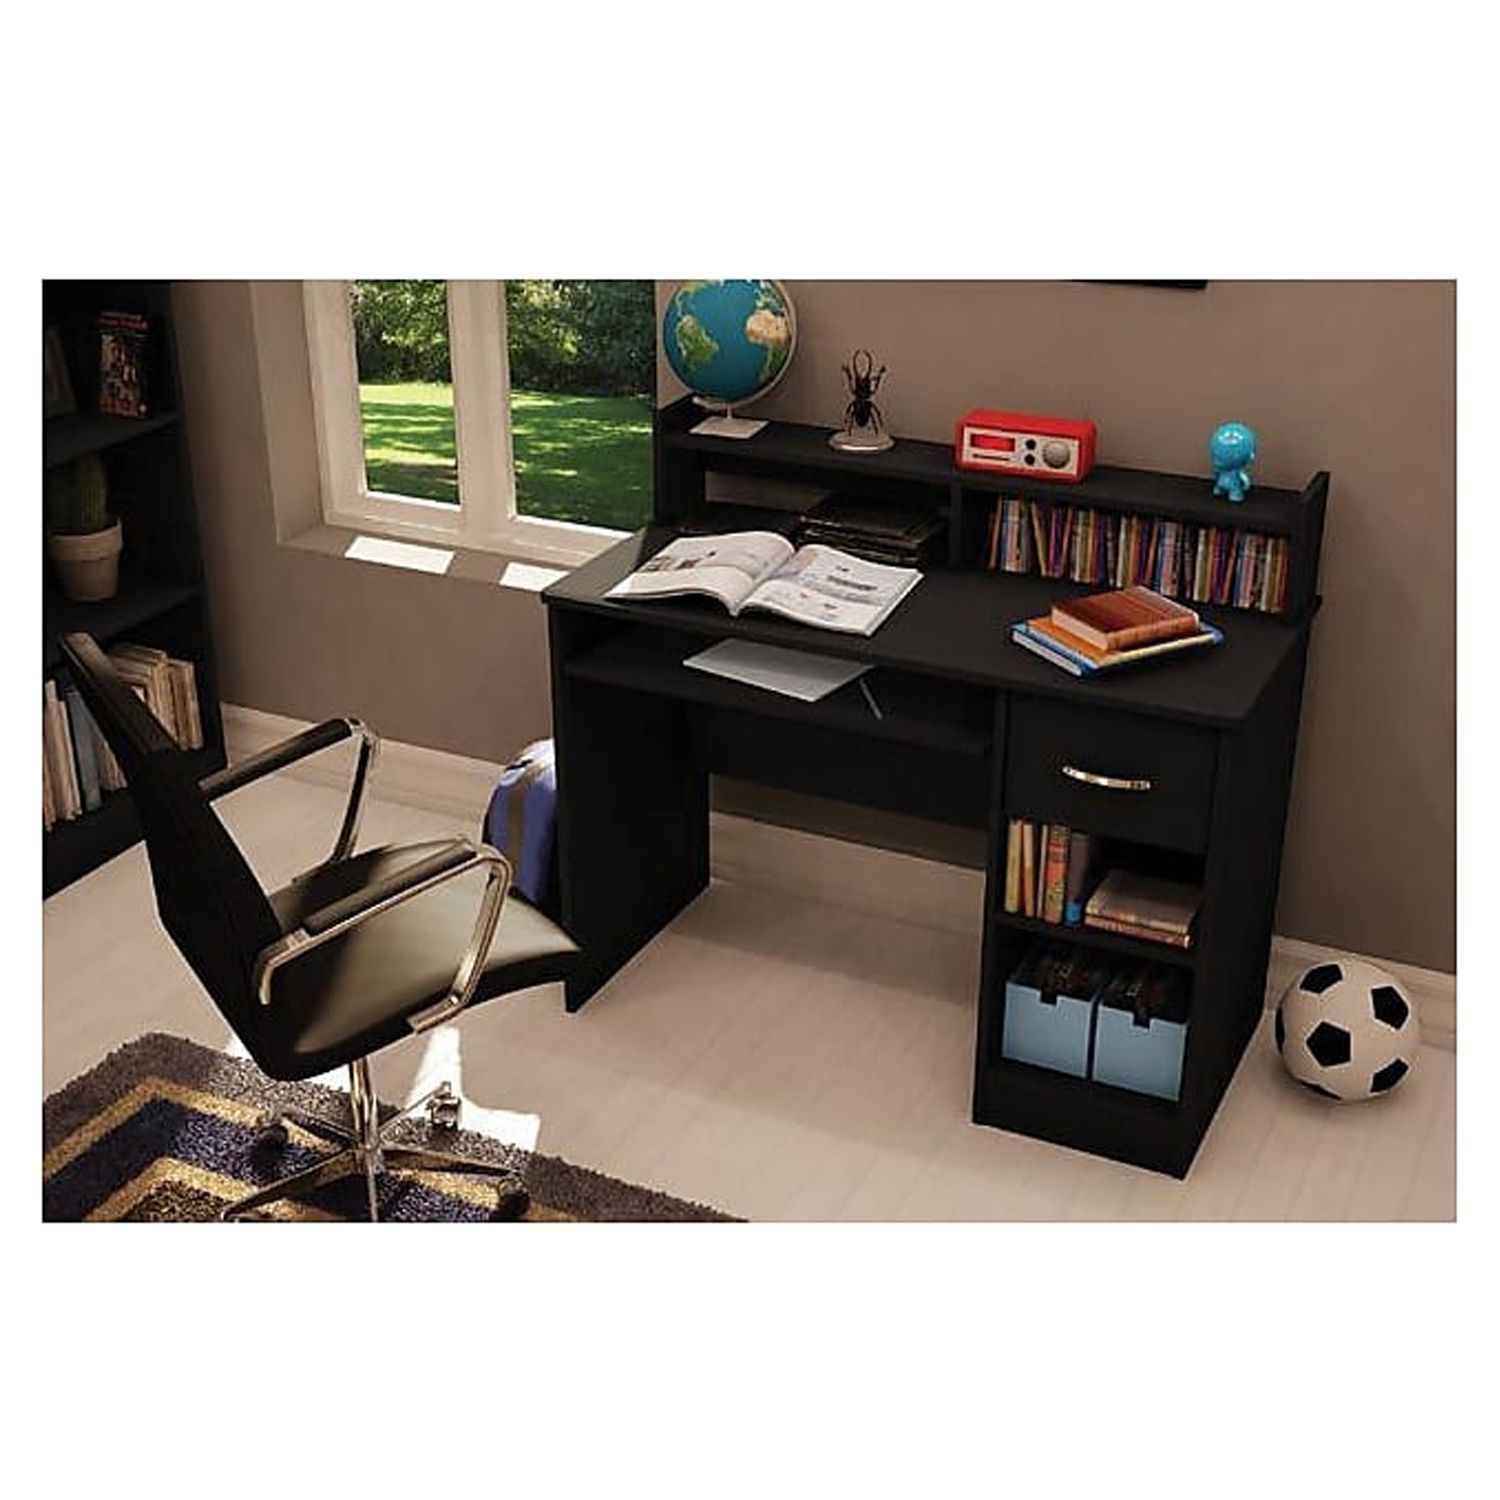 South Shore Axess, Contemporary Desk, Medium Desk Black - image 3 of 5